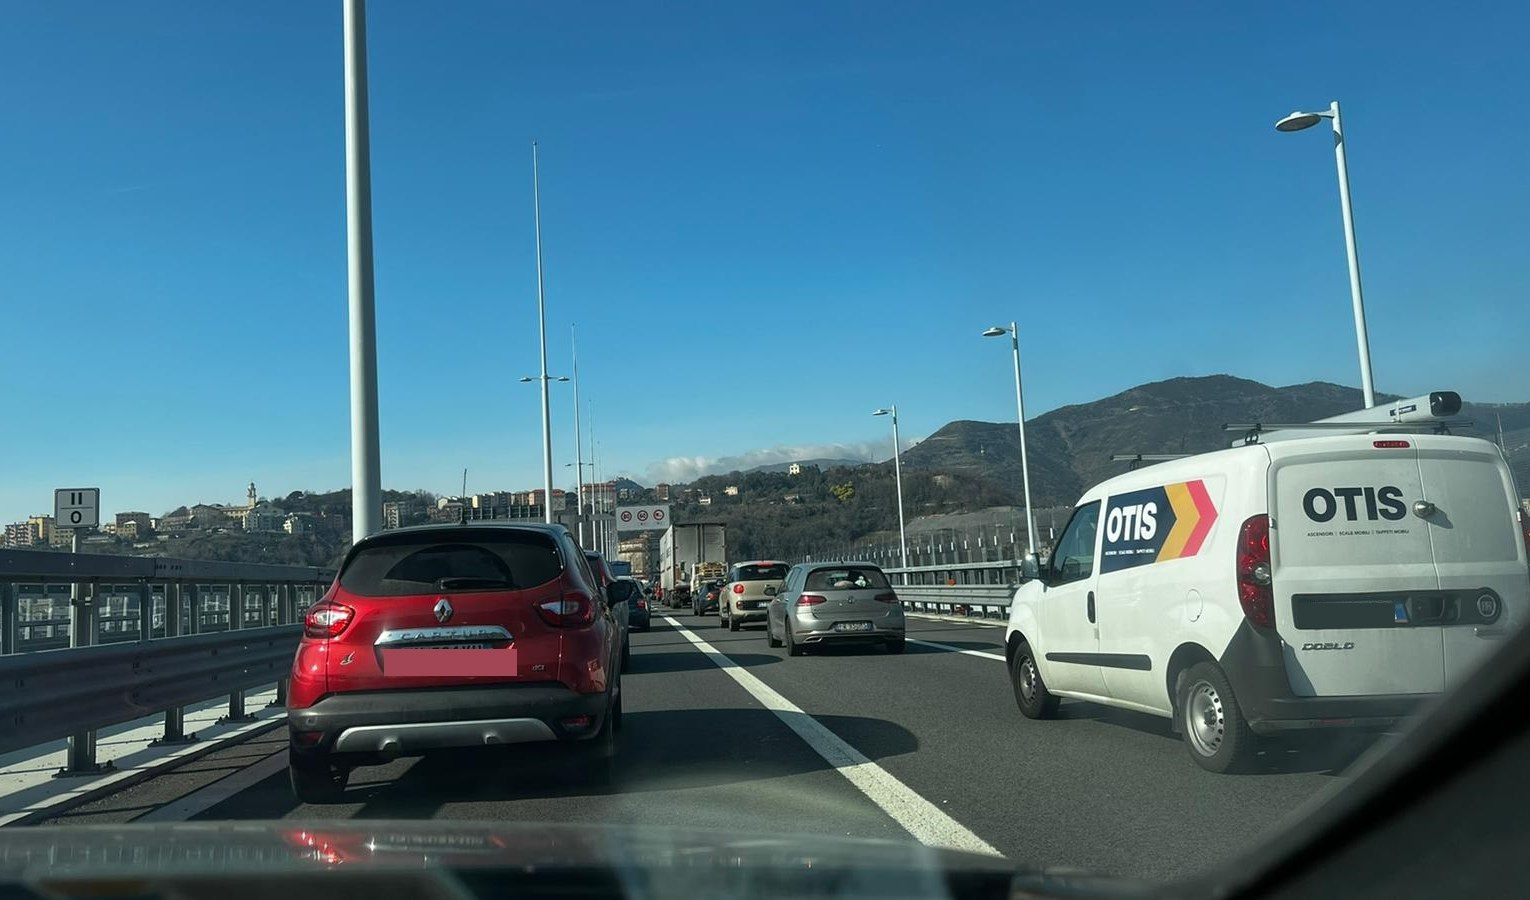 Caos autostrade, tamponamento a catena sul ponte San Giorgio: 4 veicoli coinvolti